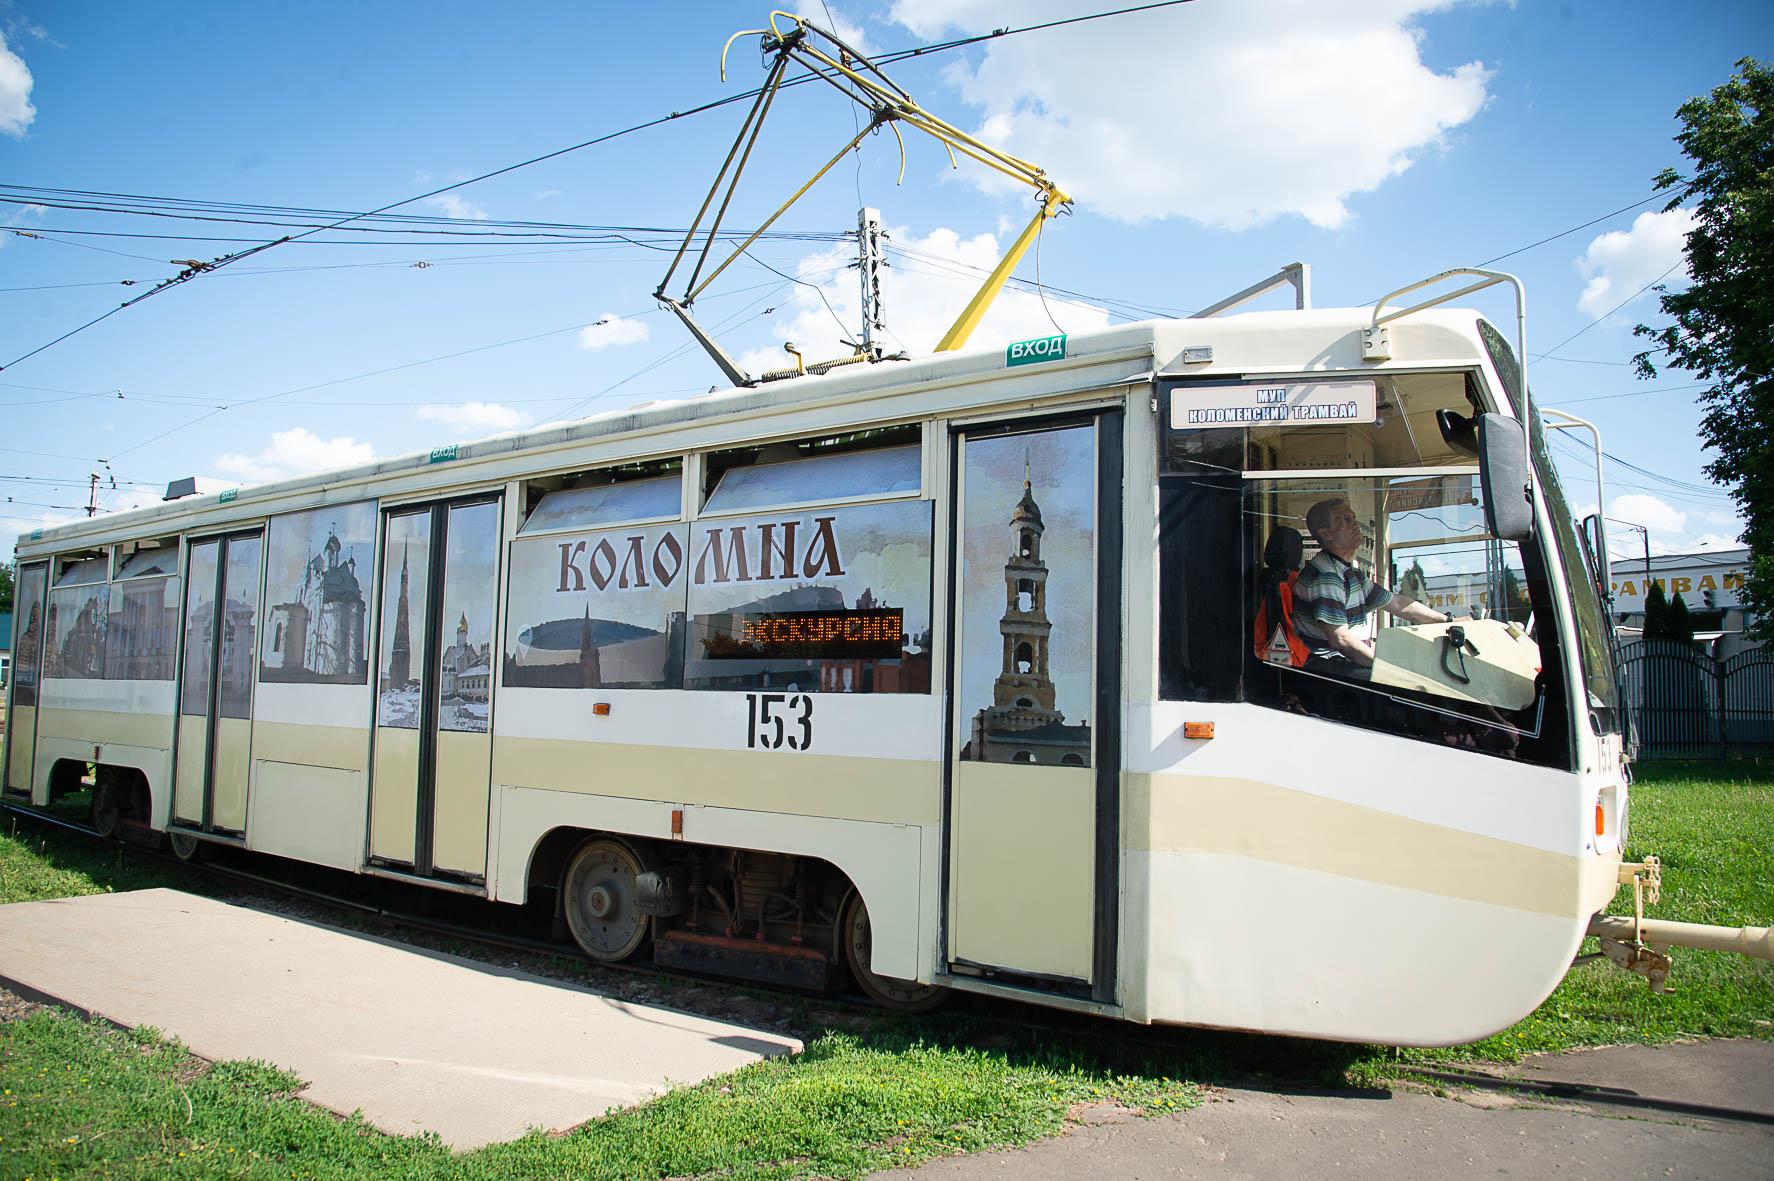 Тест-драйв трамвайной экскурсии проведут в Коломне представители турбизнеса